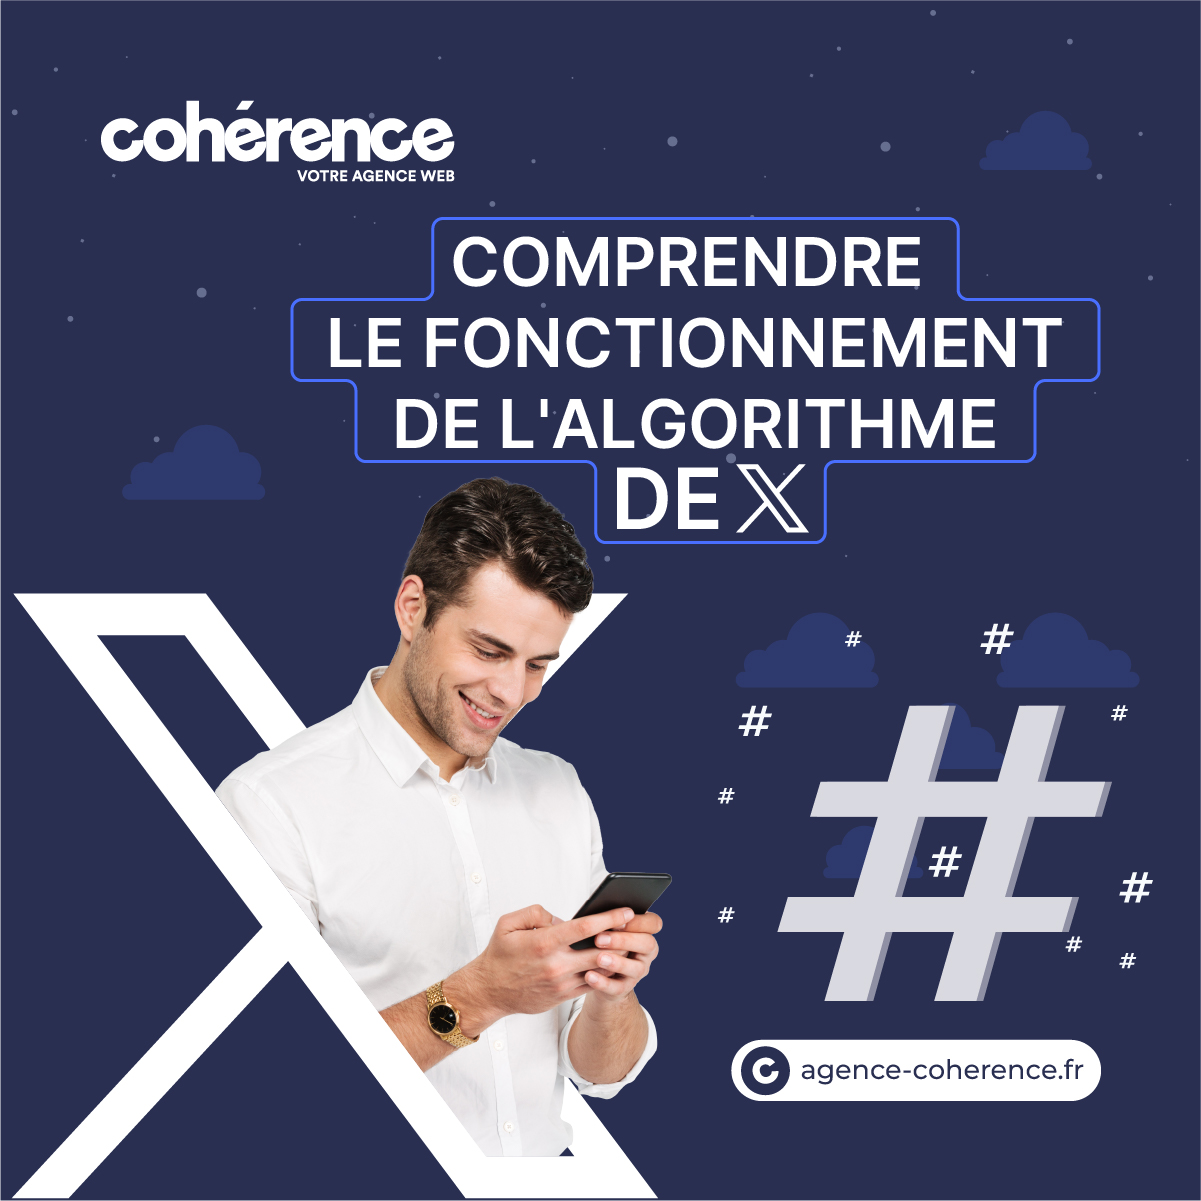 Coherence Agence Digitale Comment Fonctionne Lalgorithme De X 1